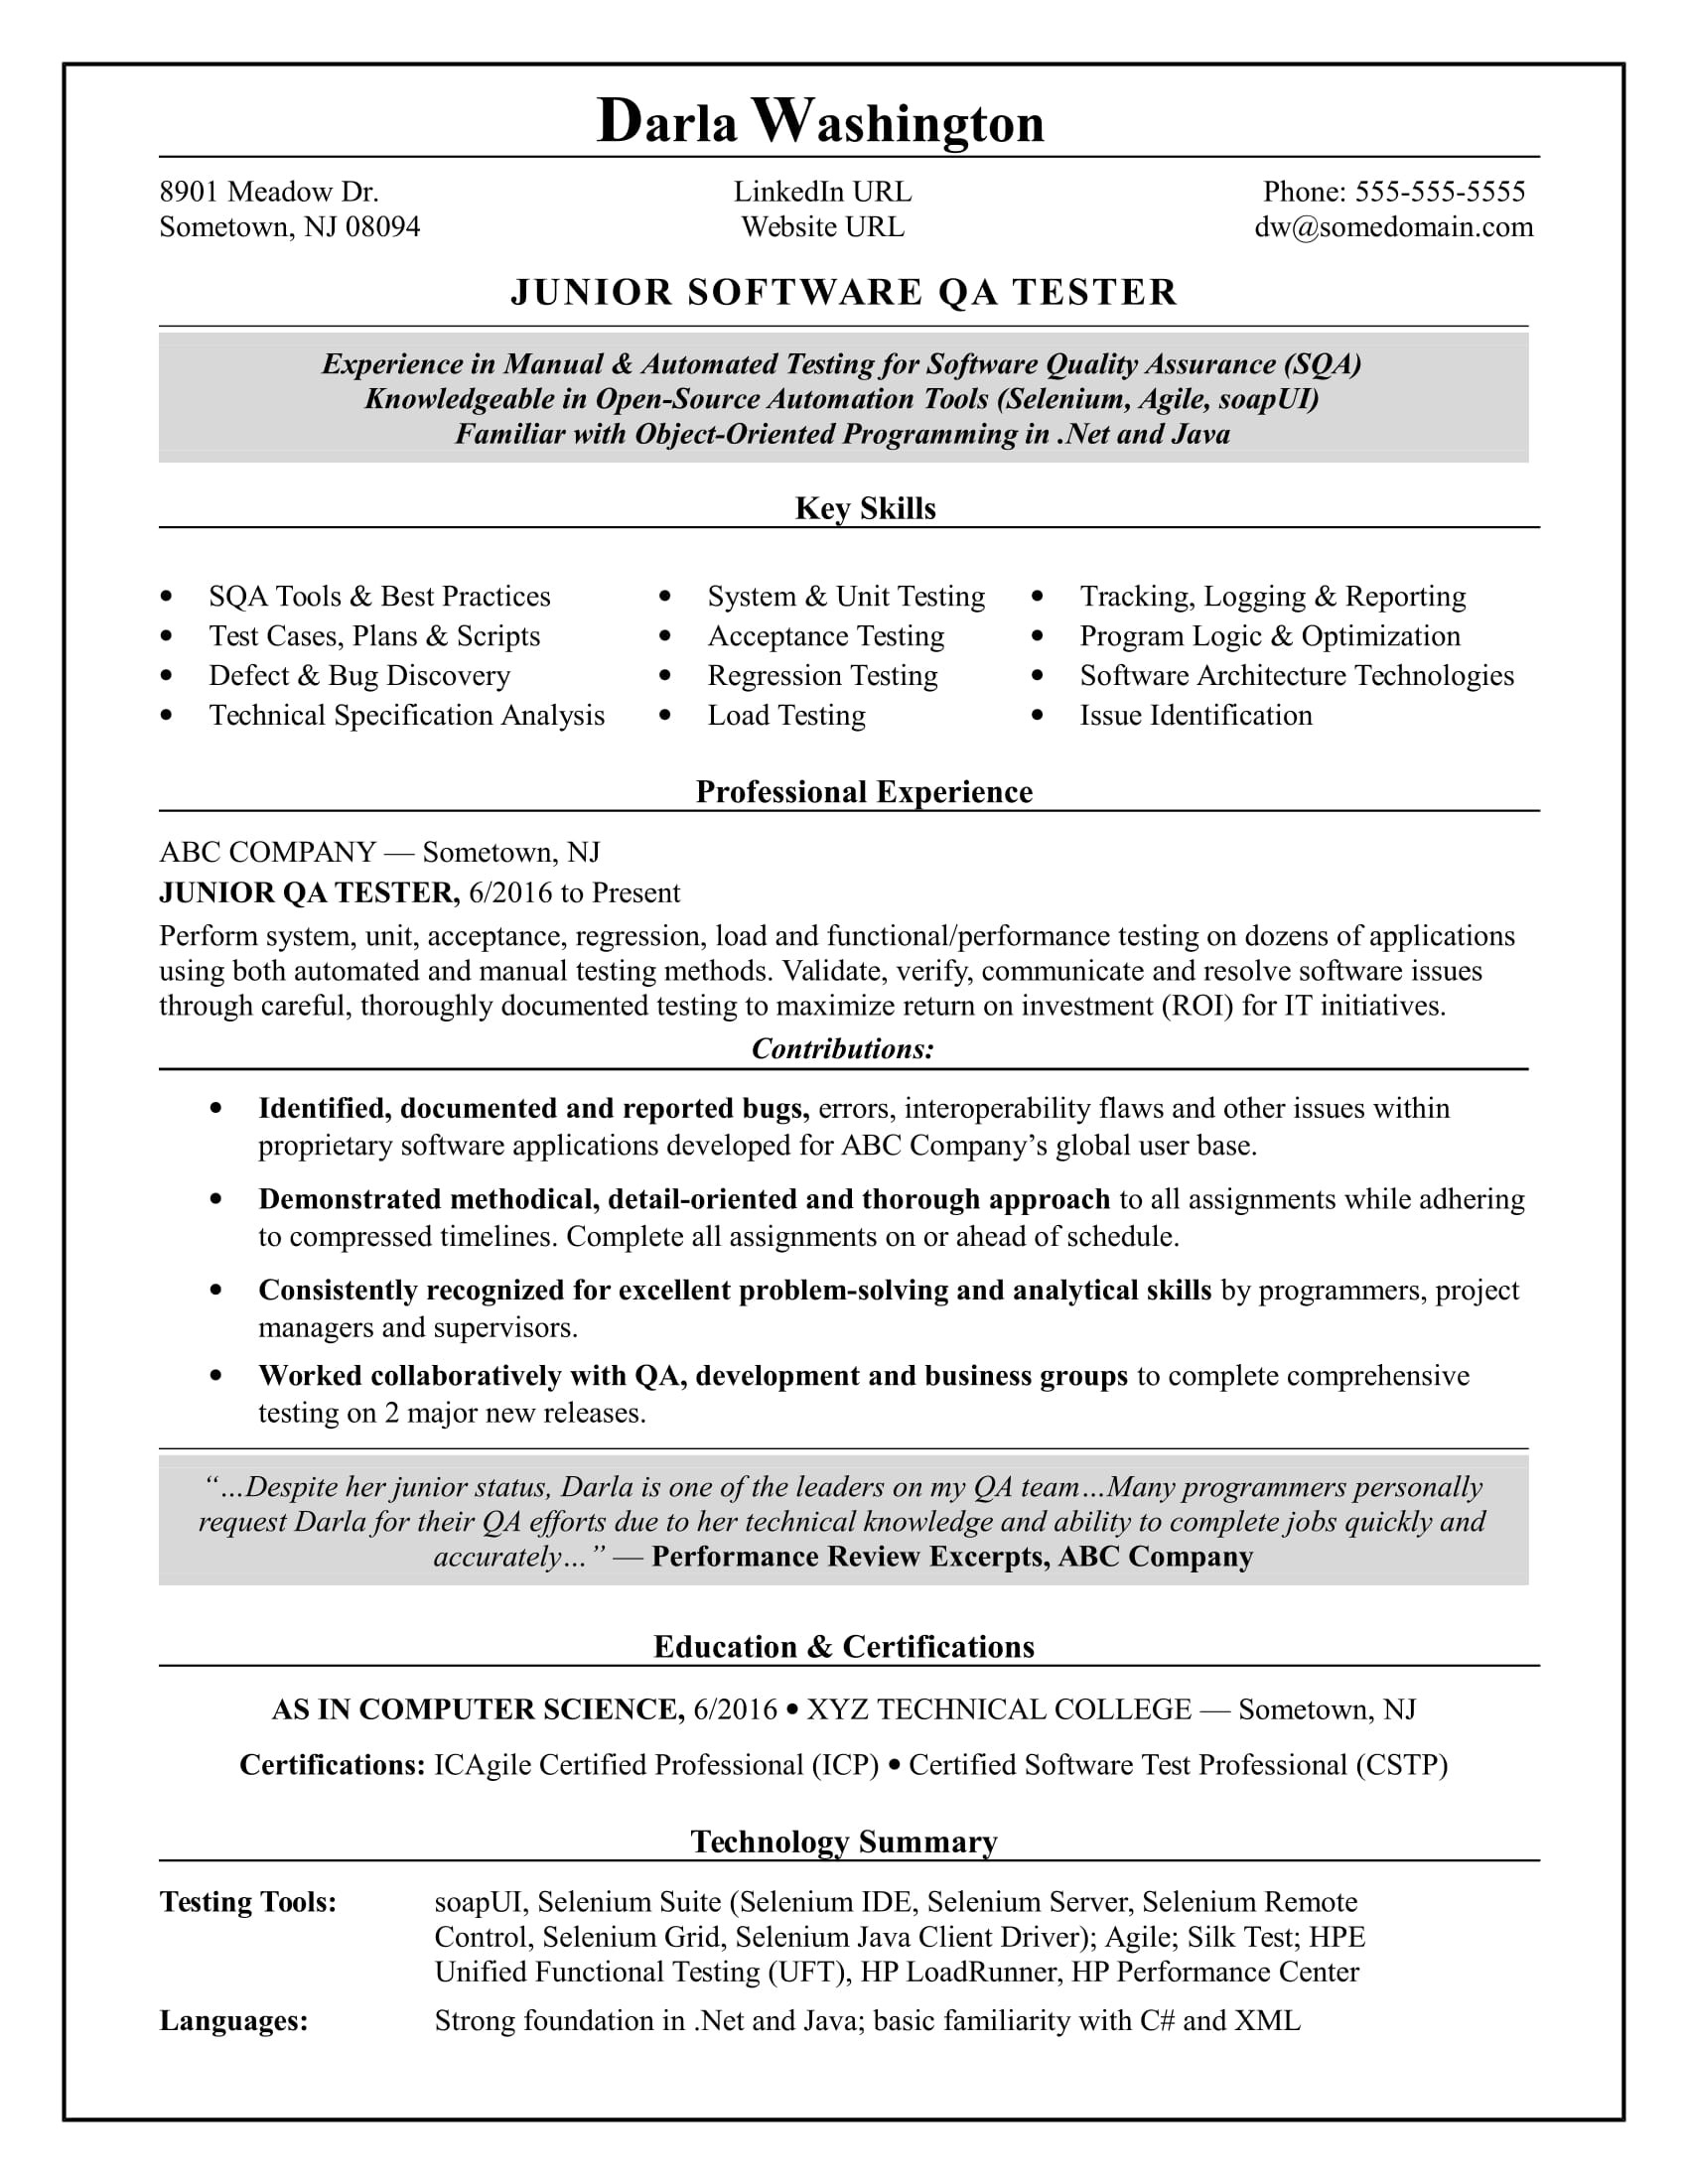 Sample Resume for Qa Tester Entry Level Entry-level Qa software Tester Resume Sample Monster.com